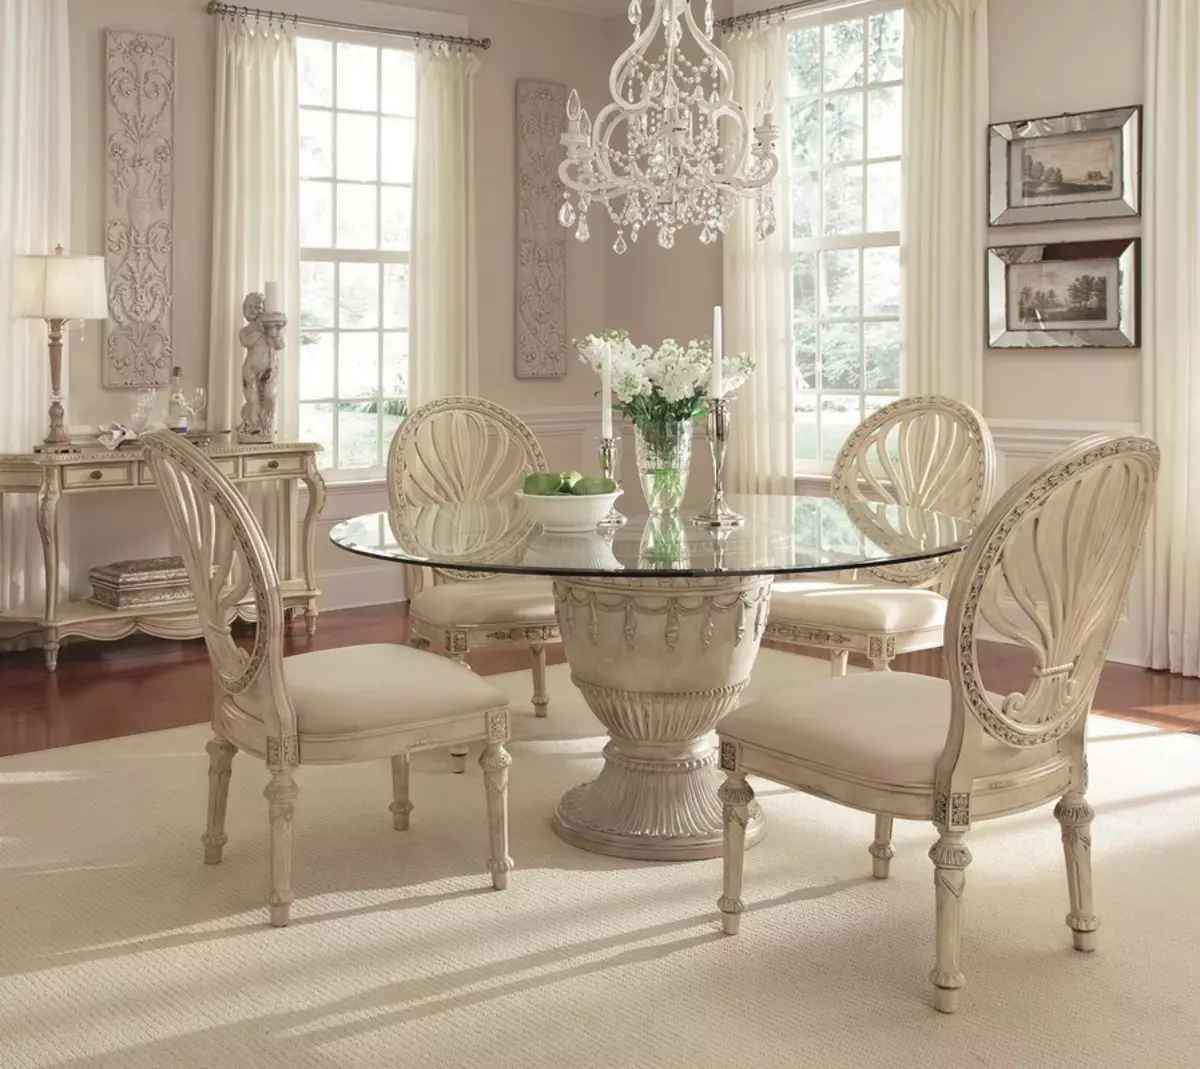 Tafels en stoele vir die woonkamer (56 foto's): Kies meubels vir die klassieke styl saal, moderne en klassieke middagete groepe met gly tafel. 9742_44